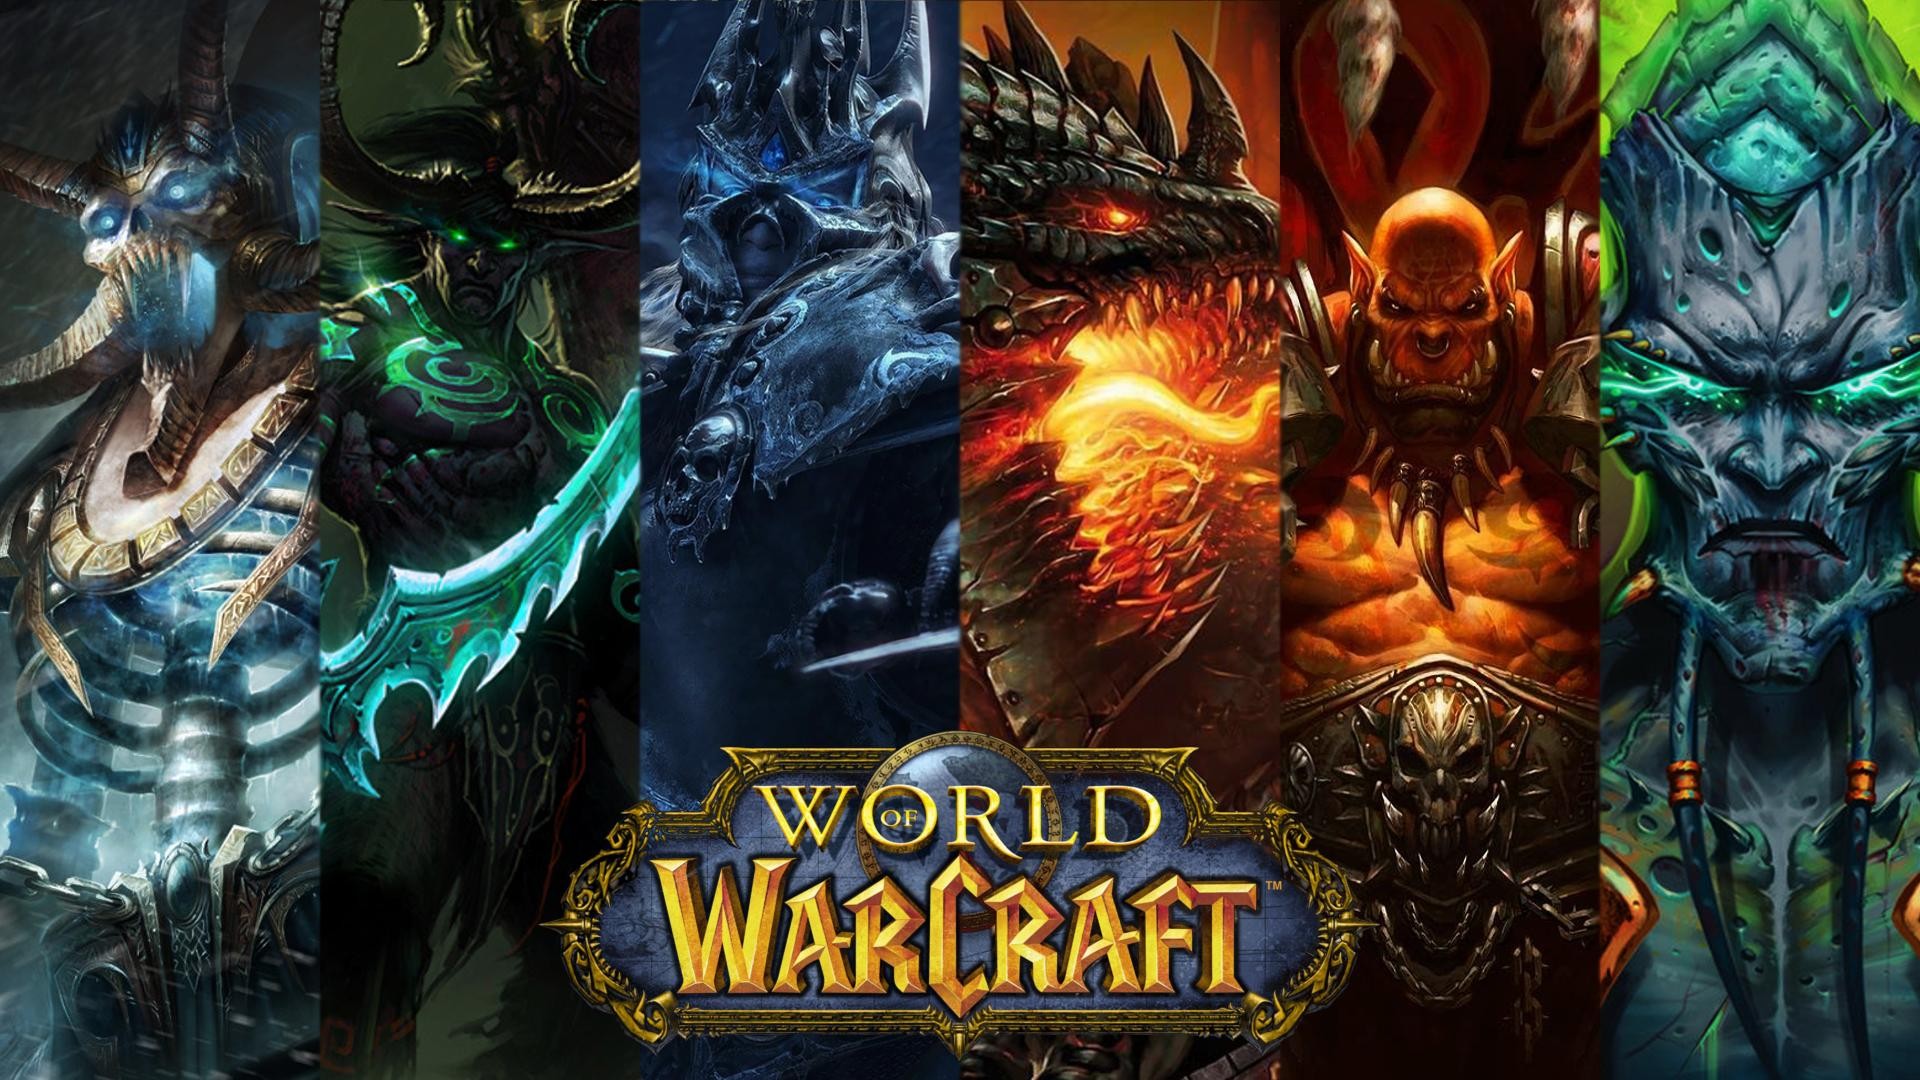 Звільнений співробітник Blizzard забрав собі підписки на World of Warcraft на 10 років уперед